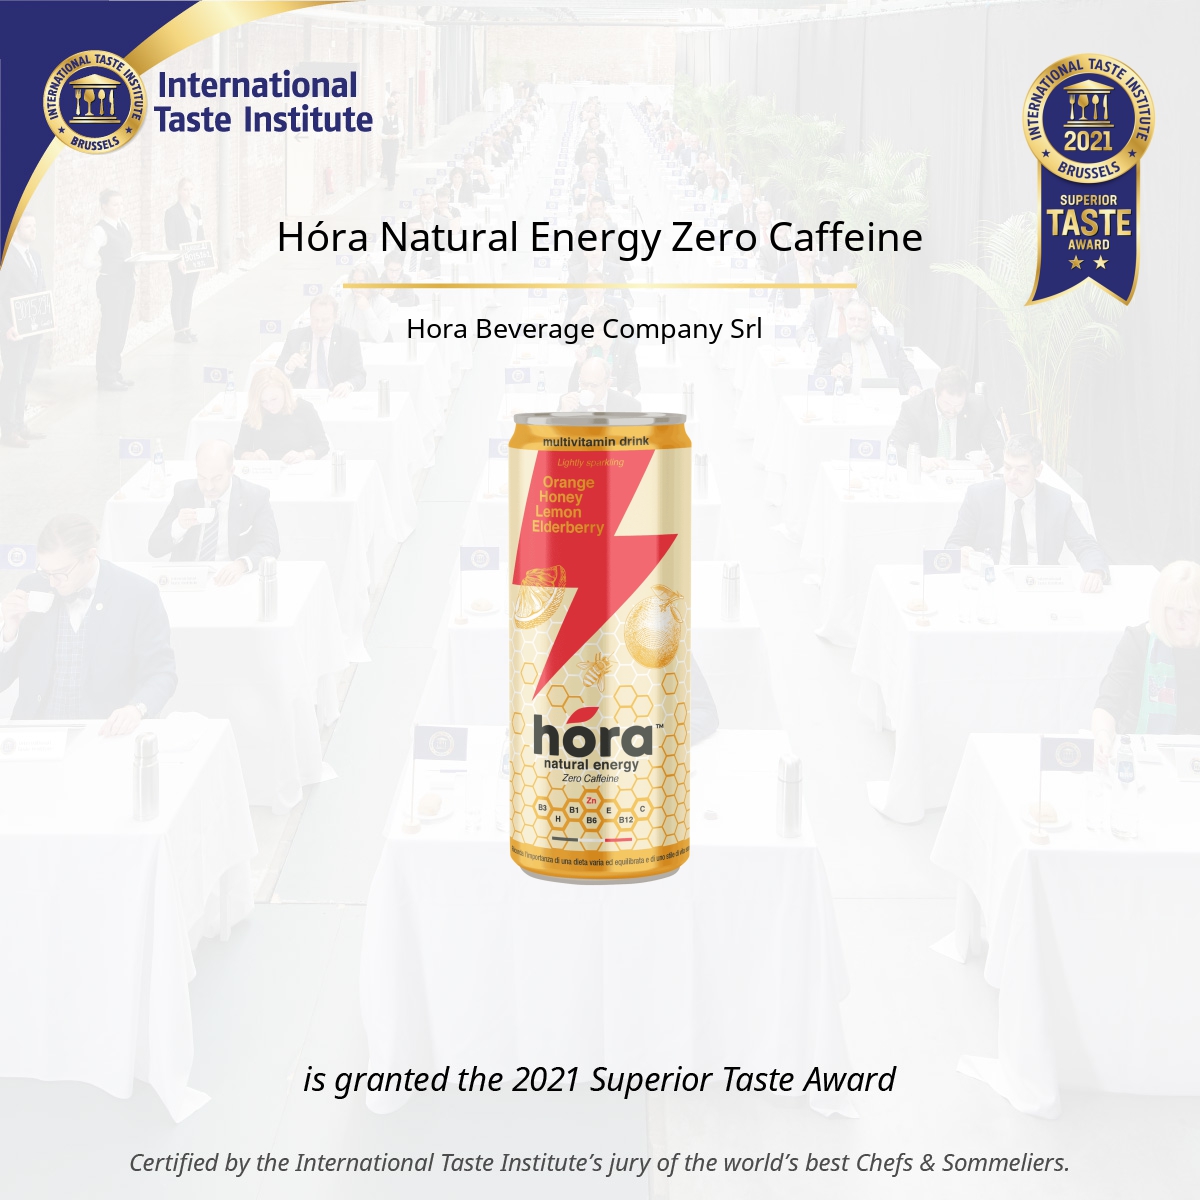 Square image of Hóra Natural Energy Zero Caffeine